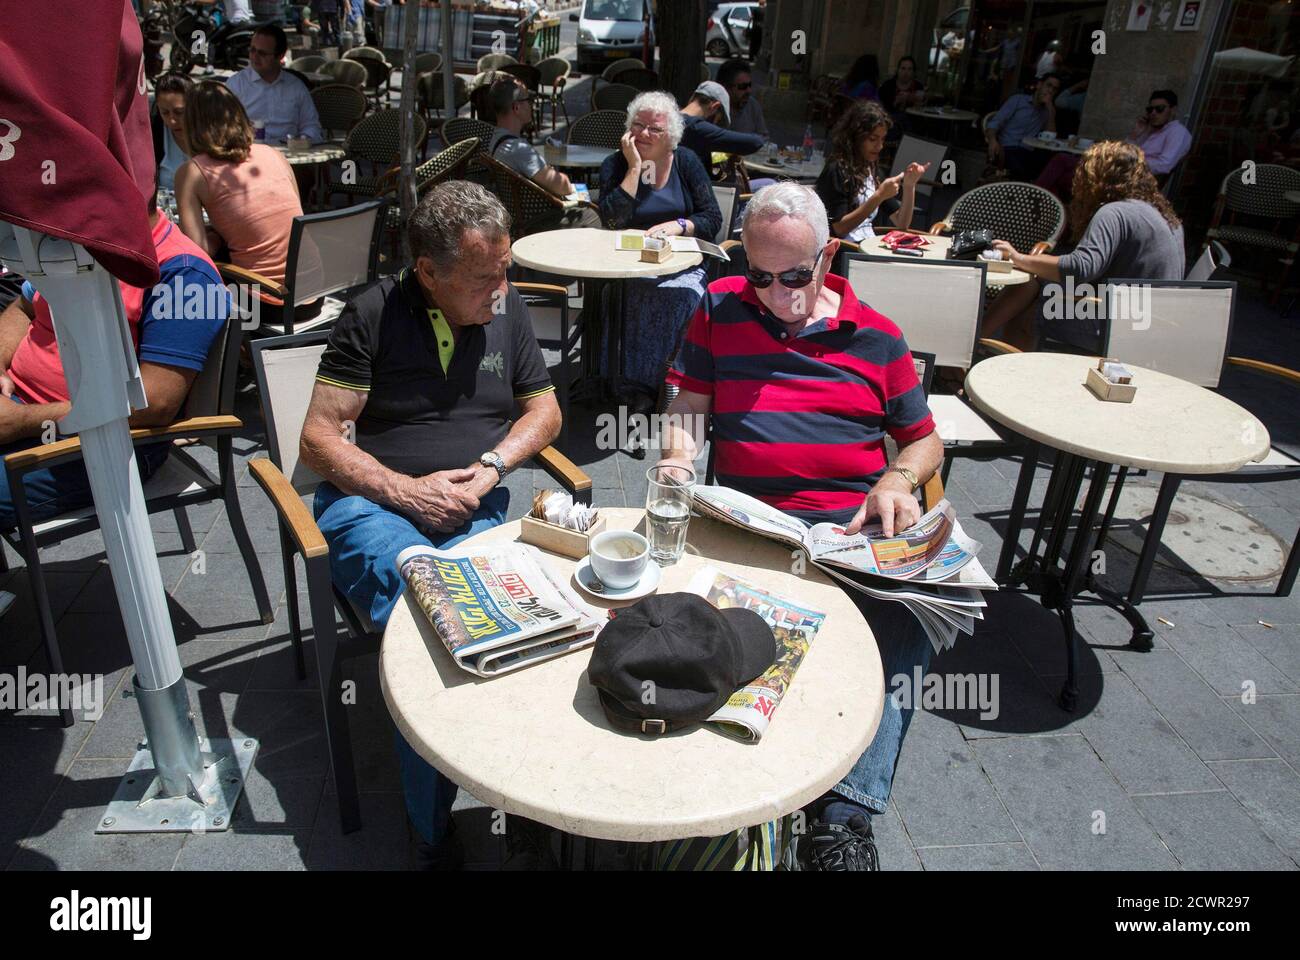 Los israelíes se sientan con una copia del periódico "Israel Hayom" (a la izquierda de la mesa) en un café en Jerusalén el 19 de mayo de 2014. REUTERS/Baz Ratner (JERUSALÉN - Tags: SOCIEDAD DE LOS MEDIOS de COMUNICACIÓN) Foto de stock